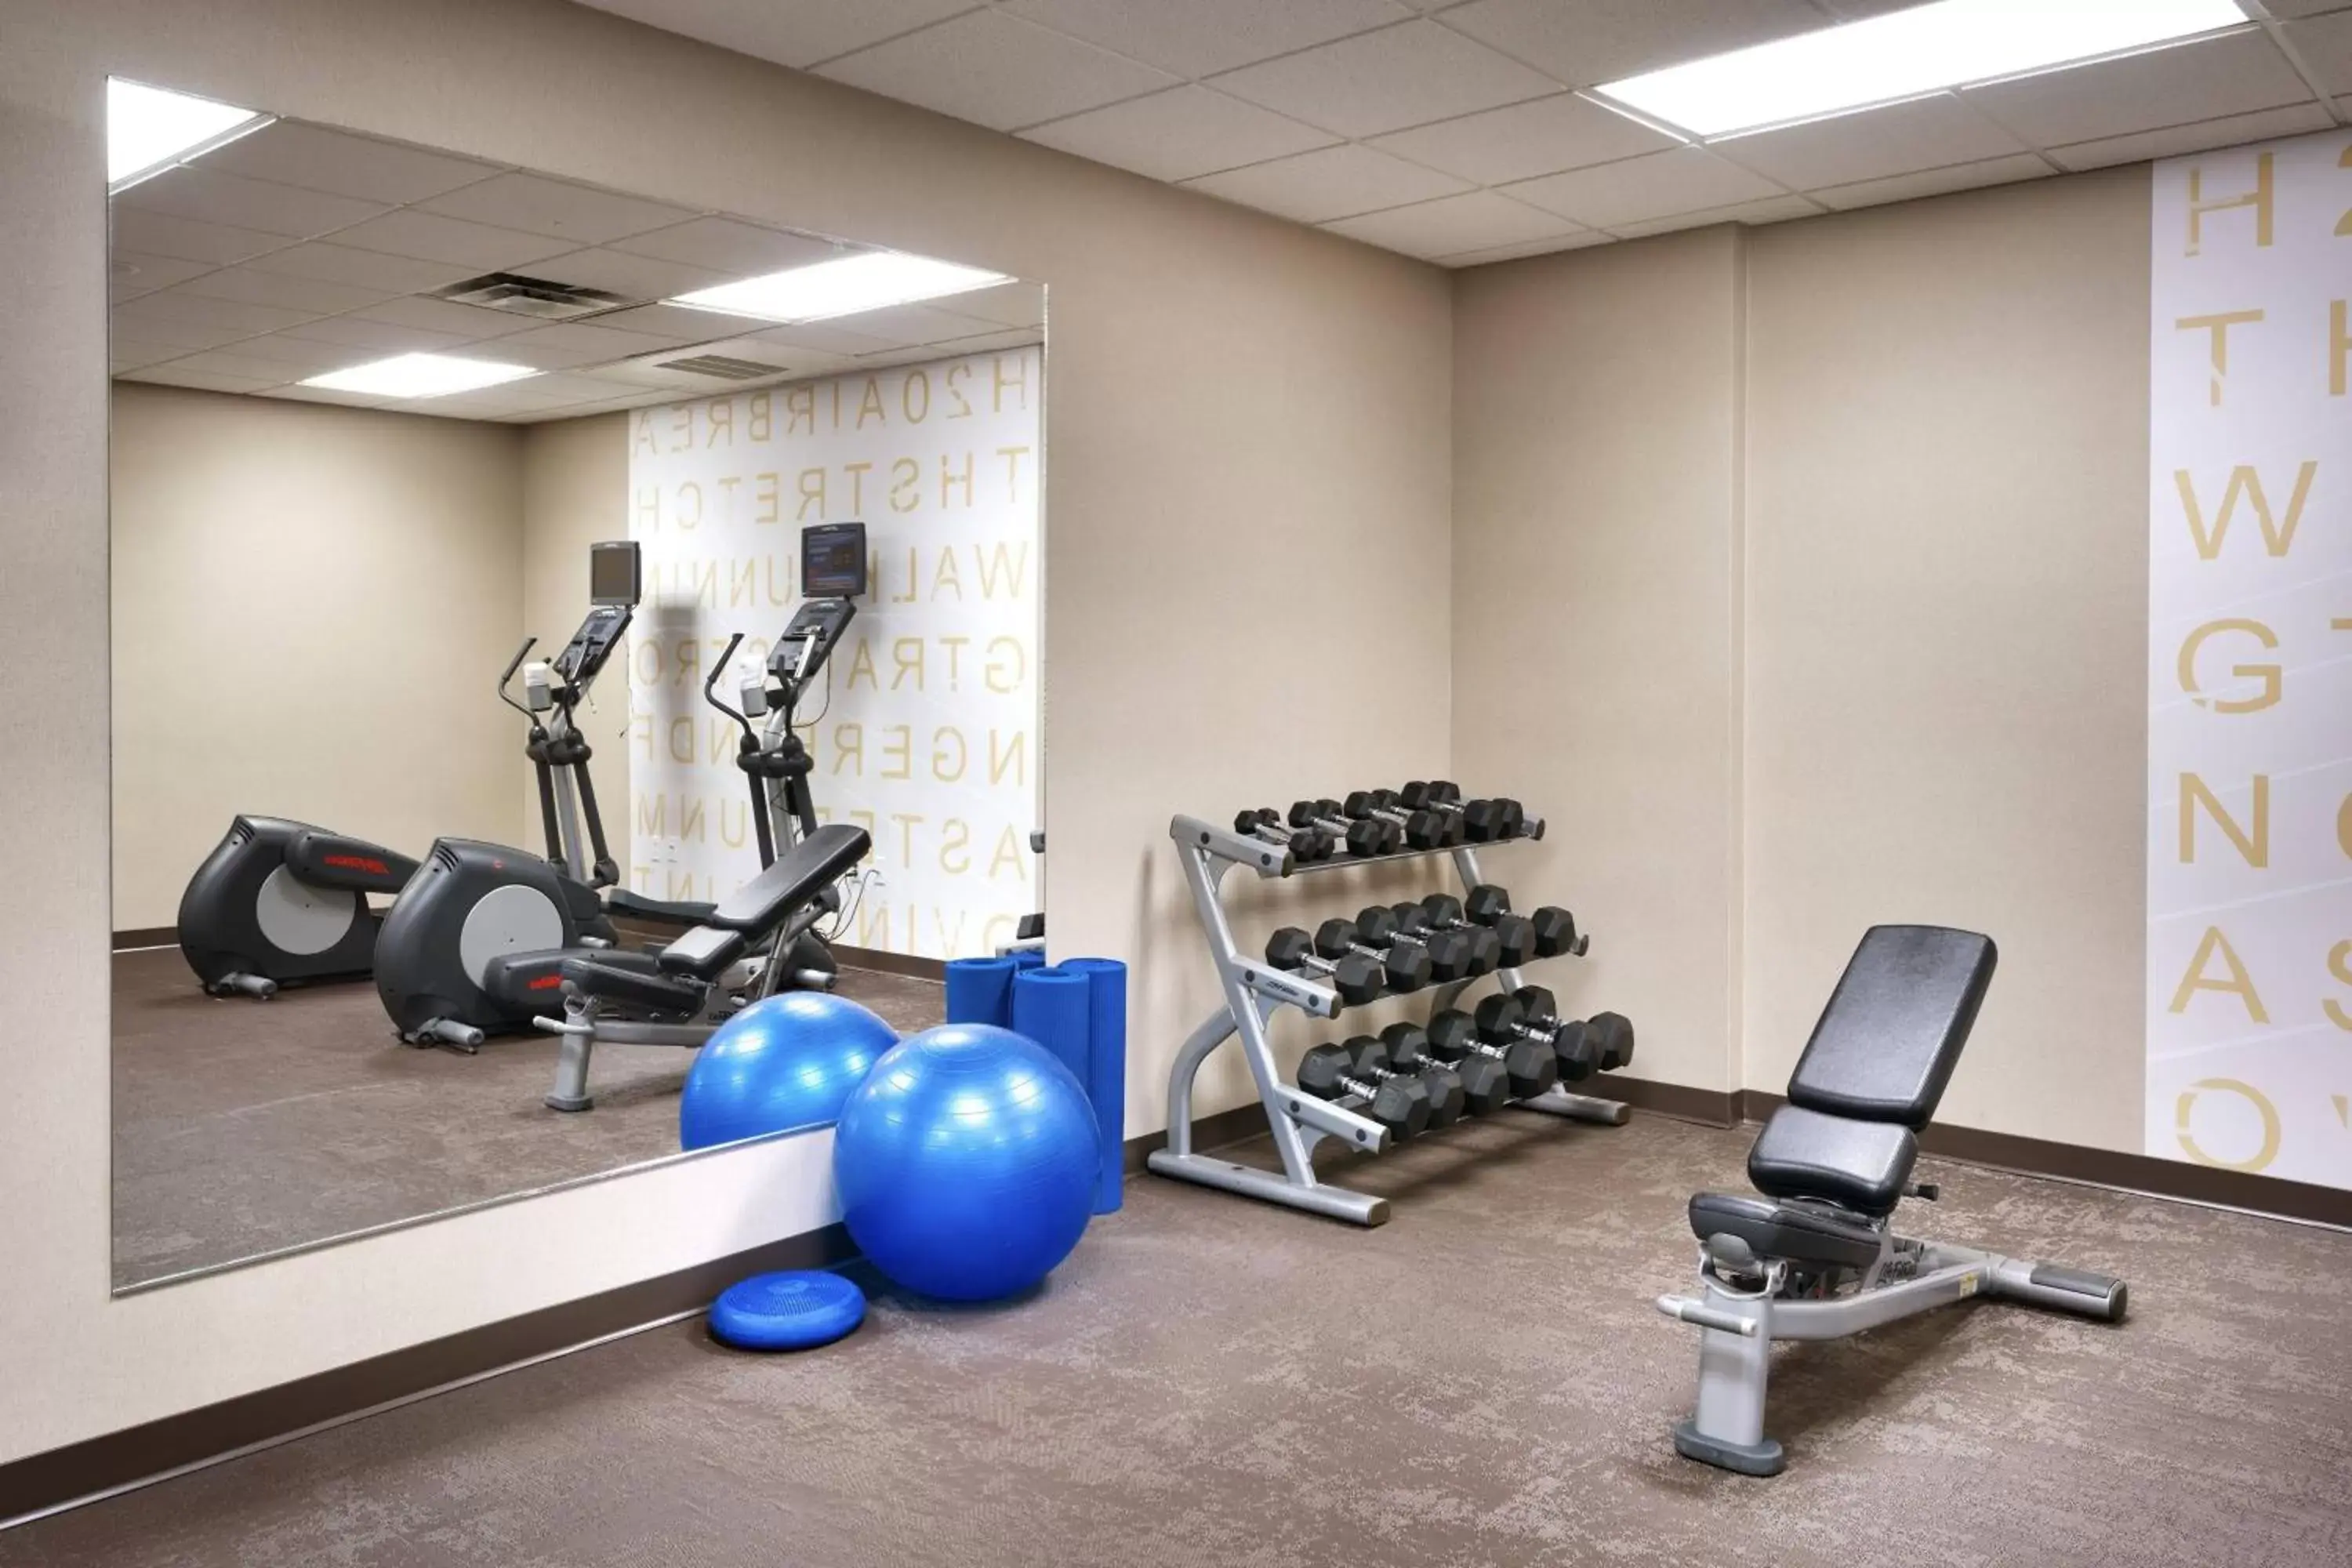 Fitness centre/facilities, Fitness Center/Facilities in Residence Inn by Marriott Idaho Falls